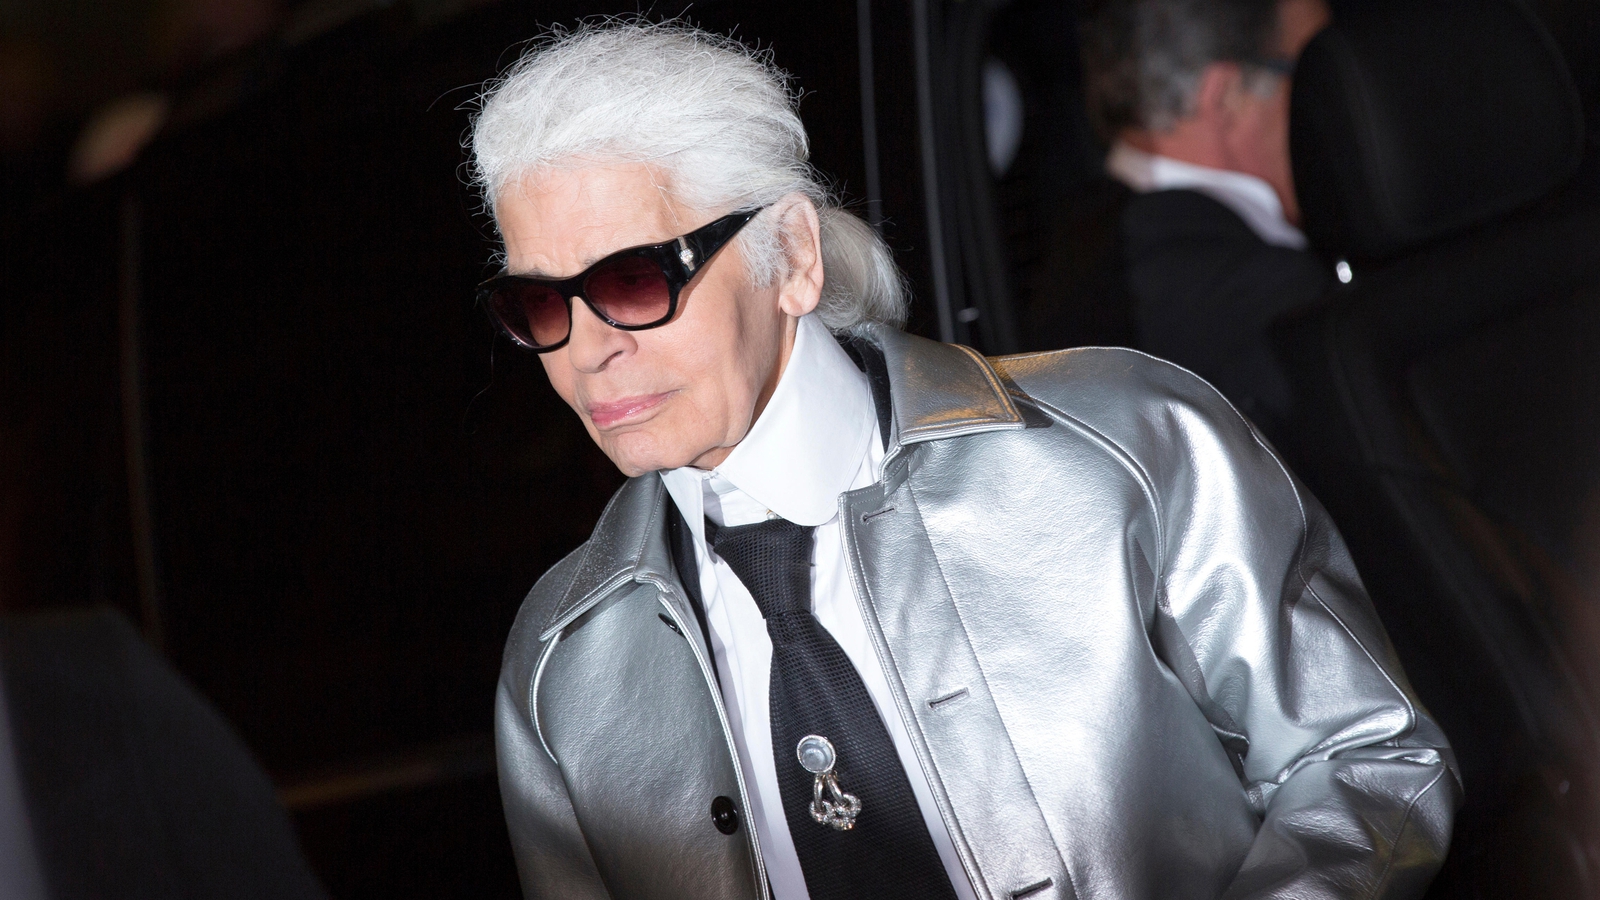 Why is the Met Gala honouring Karl Lagerfeld?